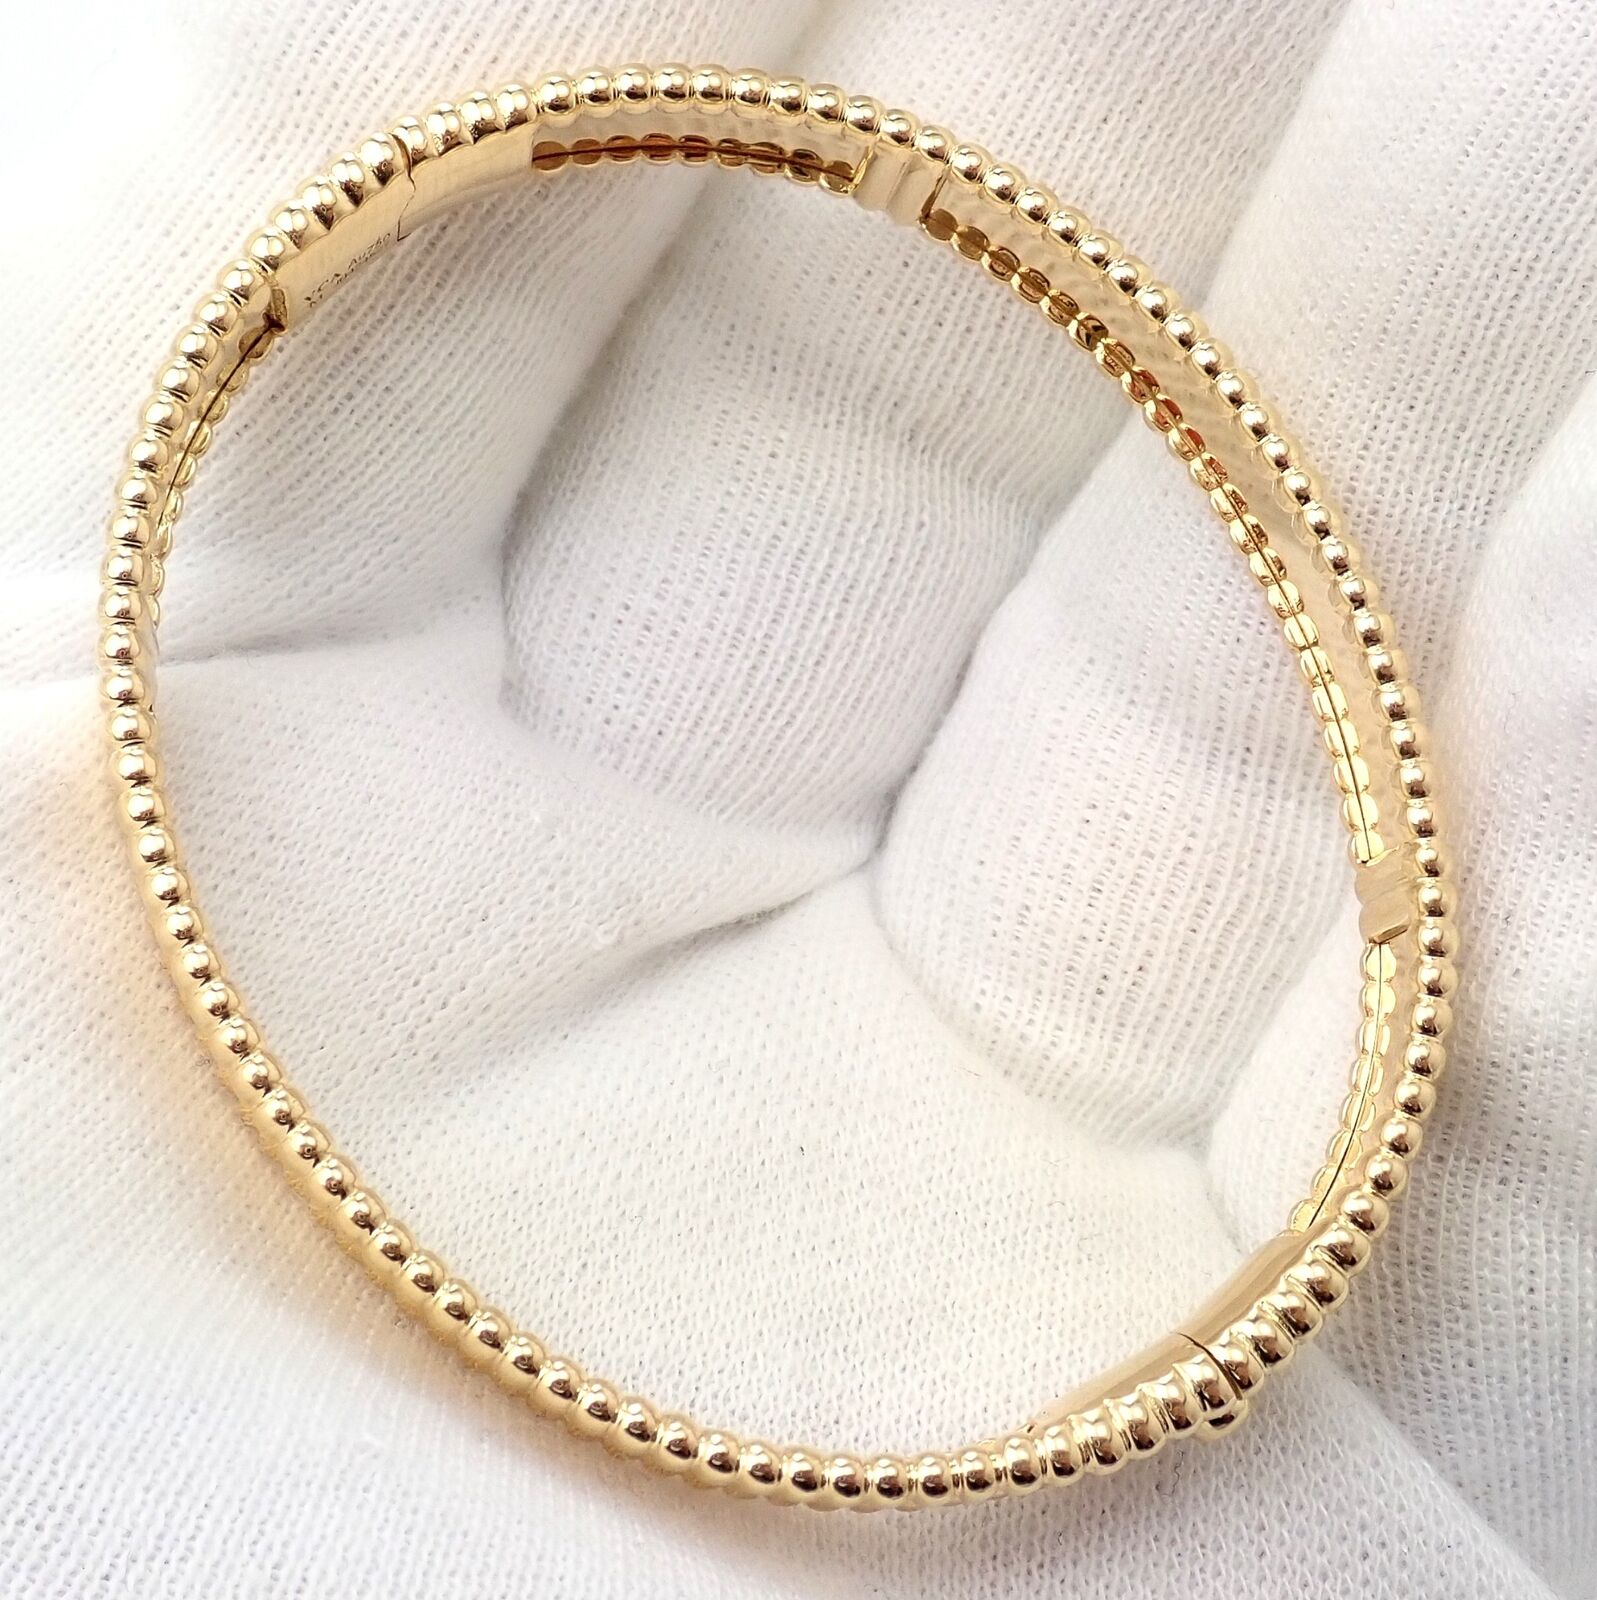 Bracelet in 18k gold, medium.